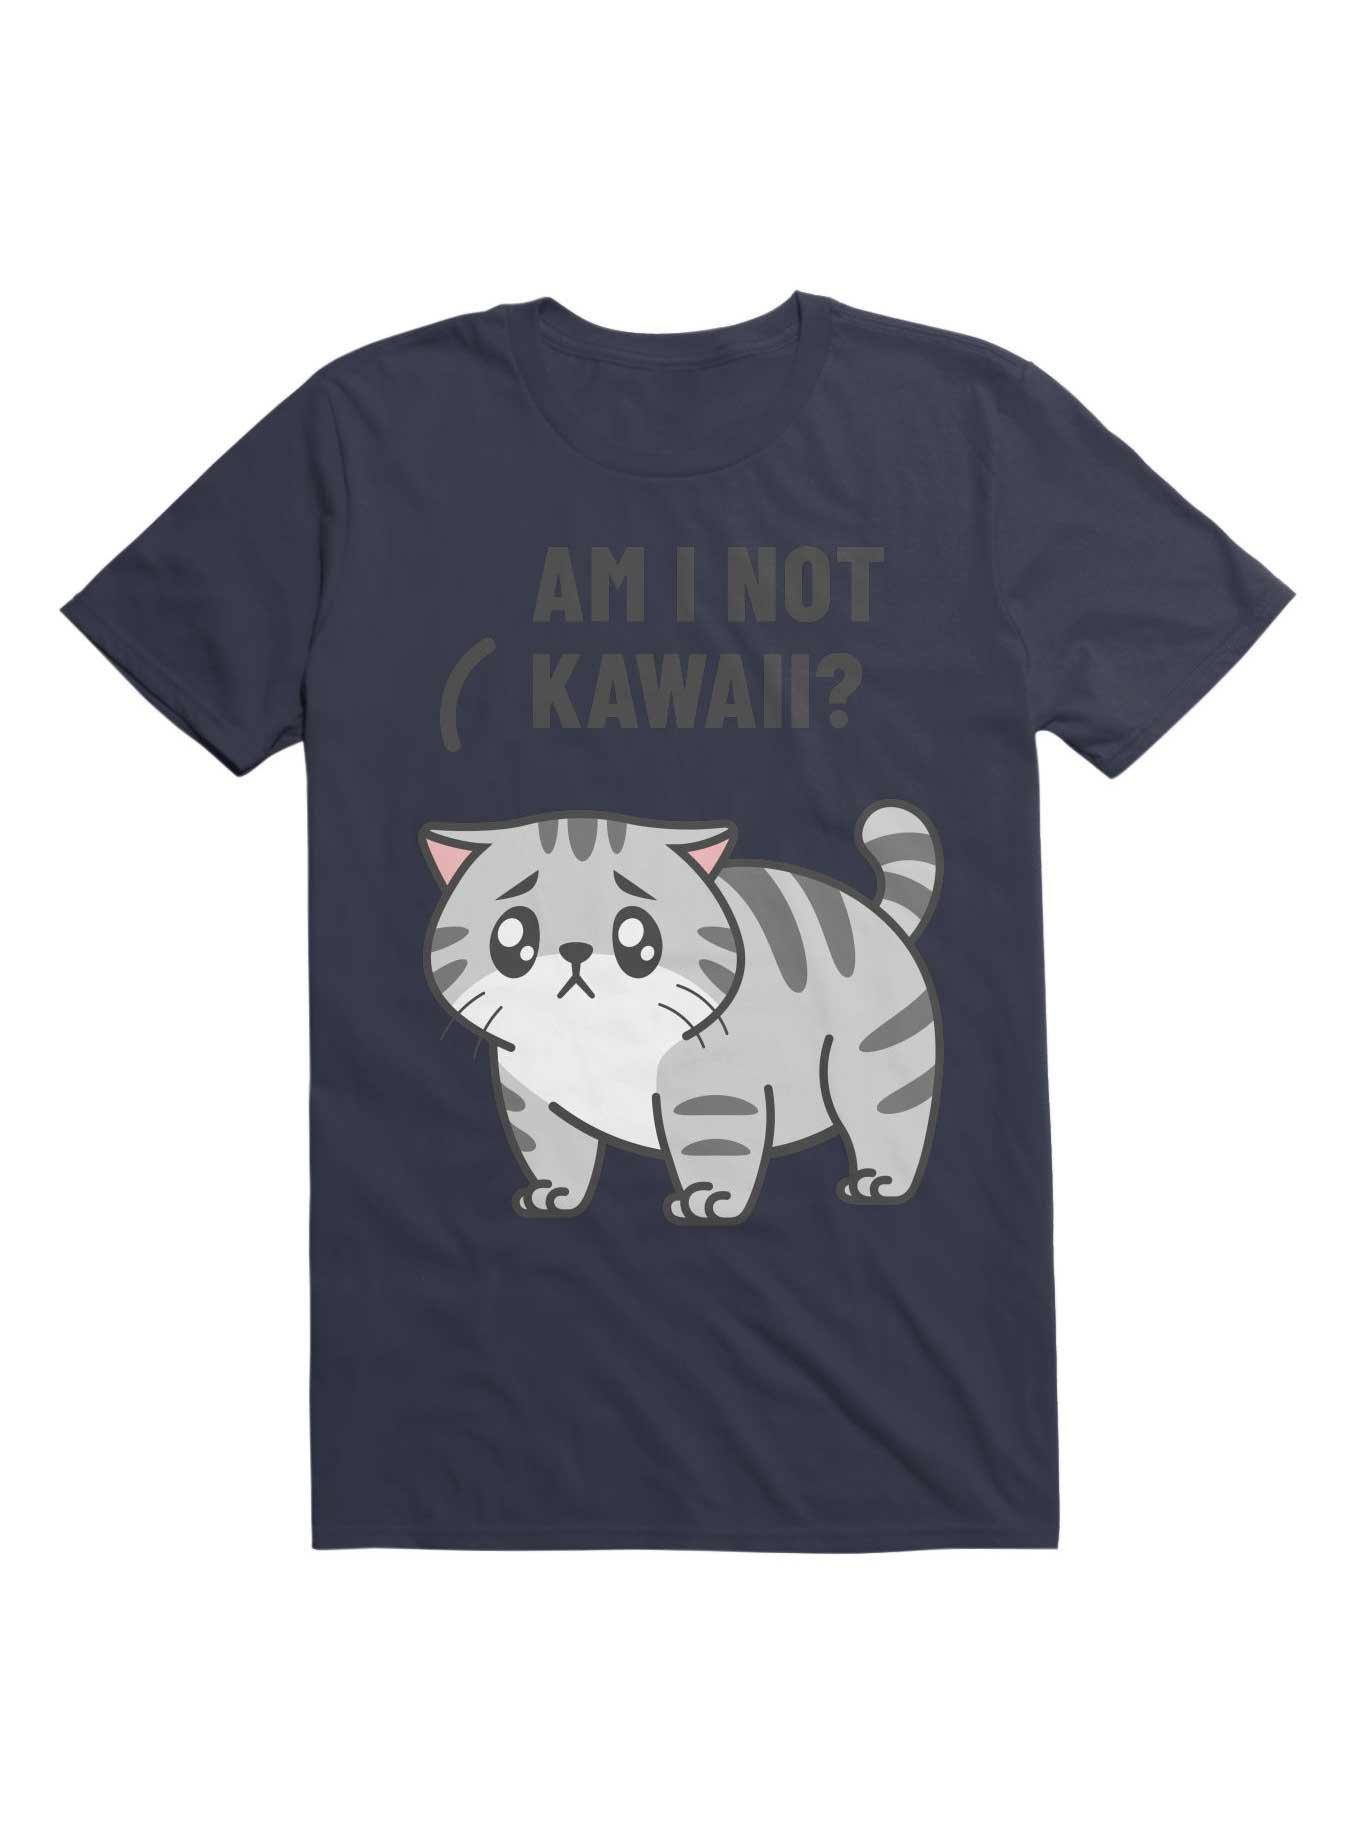 Kawaii Am I not Kawaii? T-Shirt, NAVY, hi-res